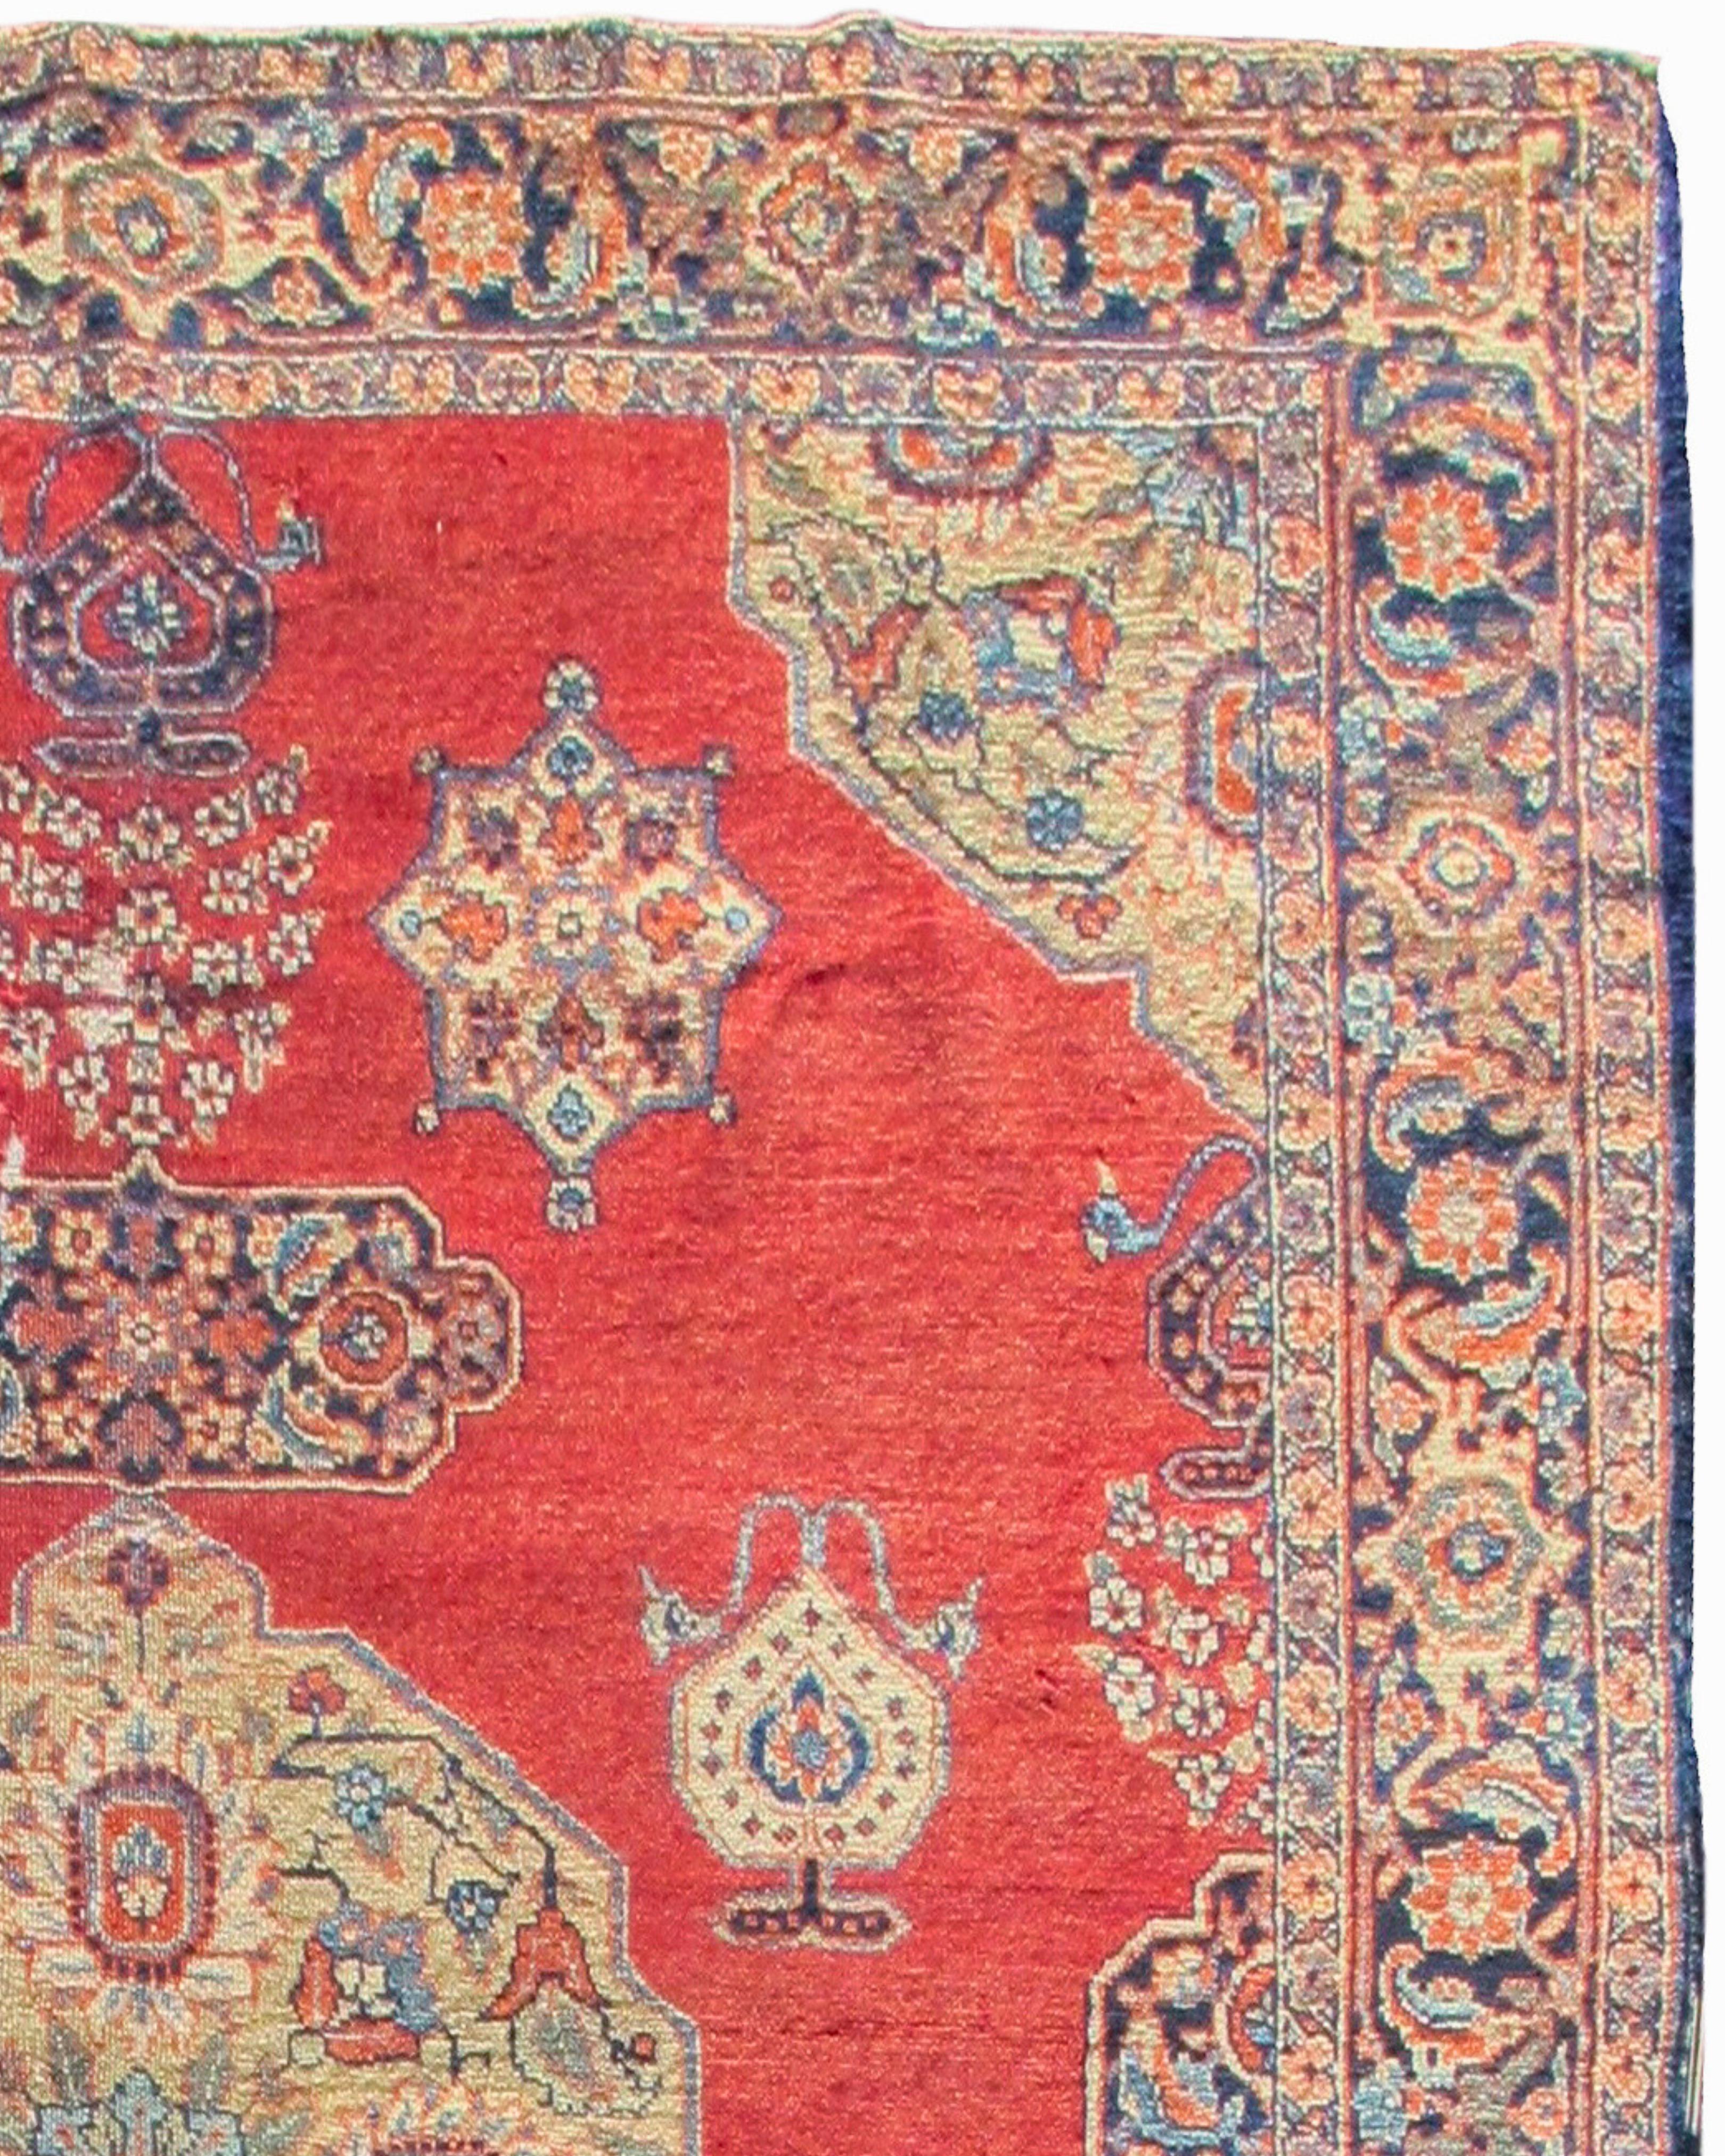 Tapis persan ancien de Tabriz, c. 1900

Très bon état.

Informations supplémentaires :
Dimensions : 6'2